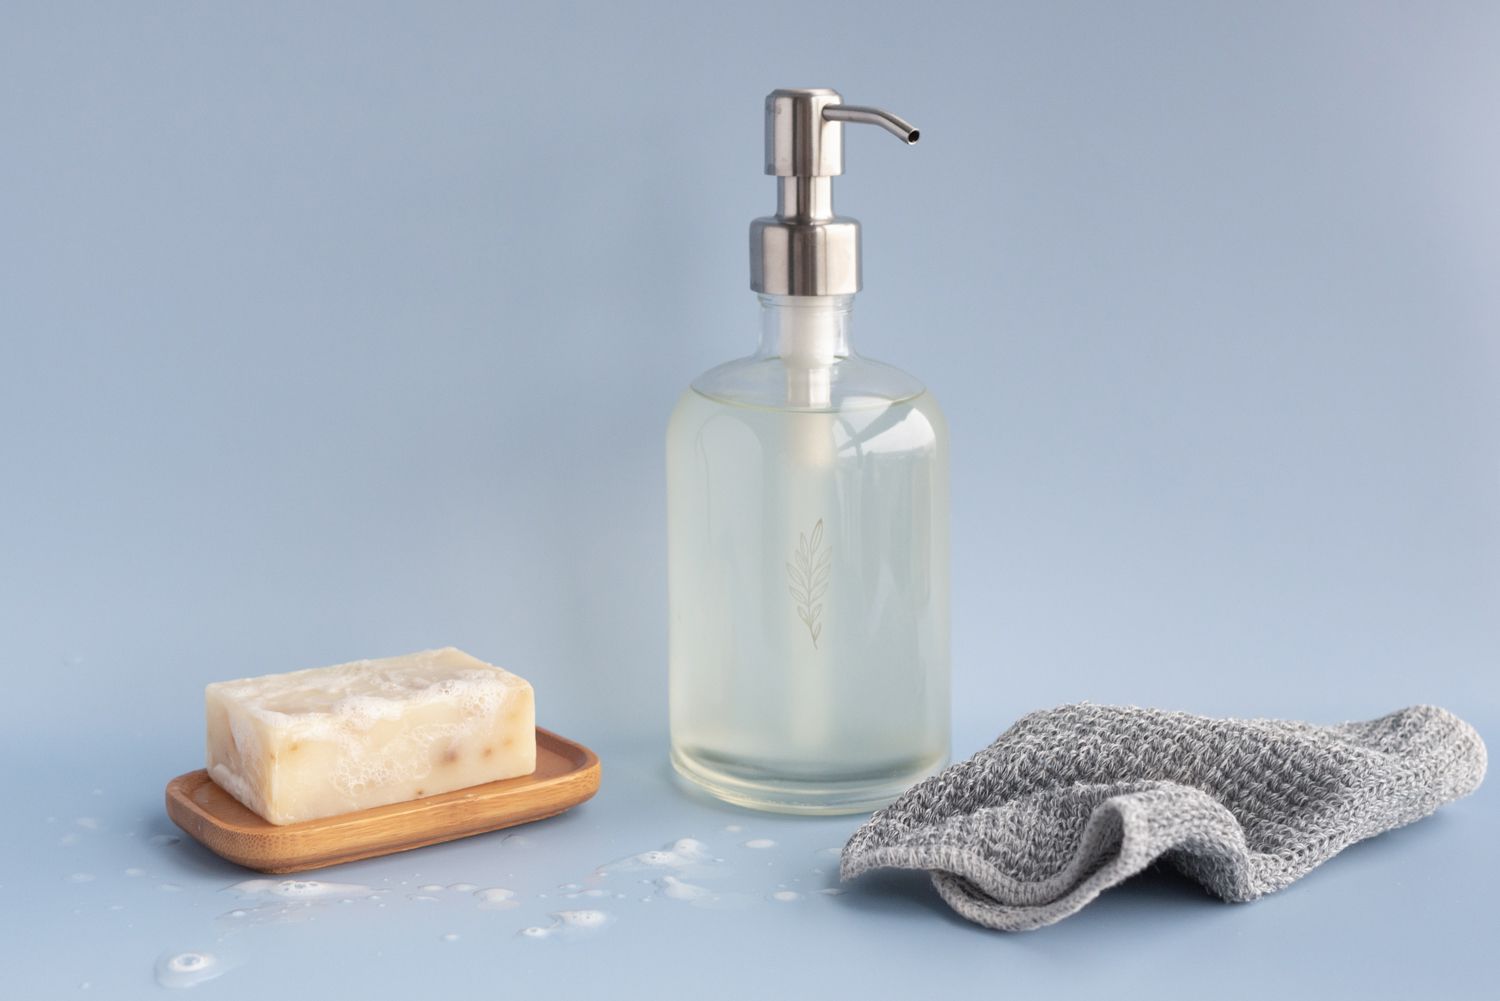 持有者的奶油吧肥皂在可重复使用的液体肥皂容器旁边